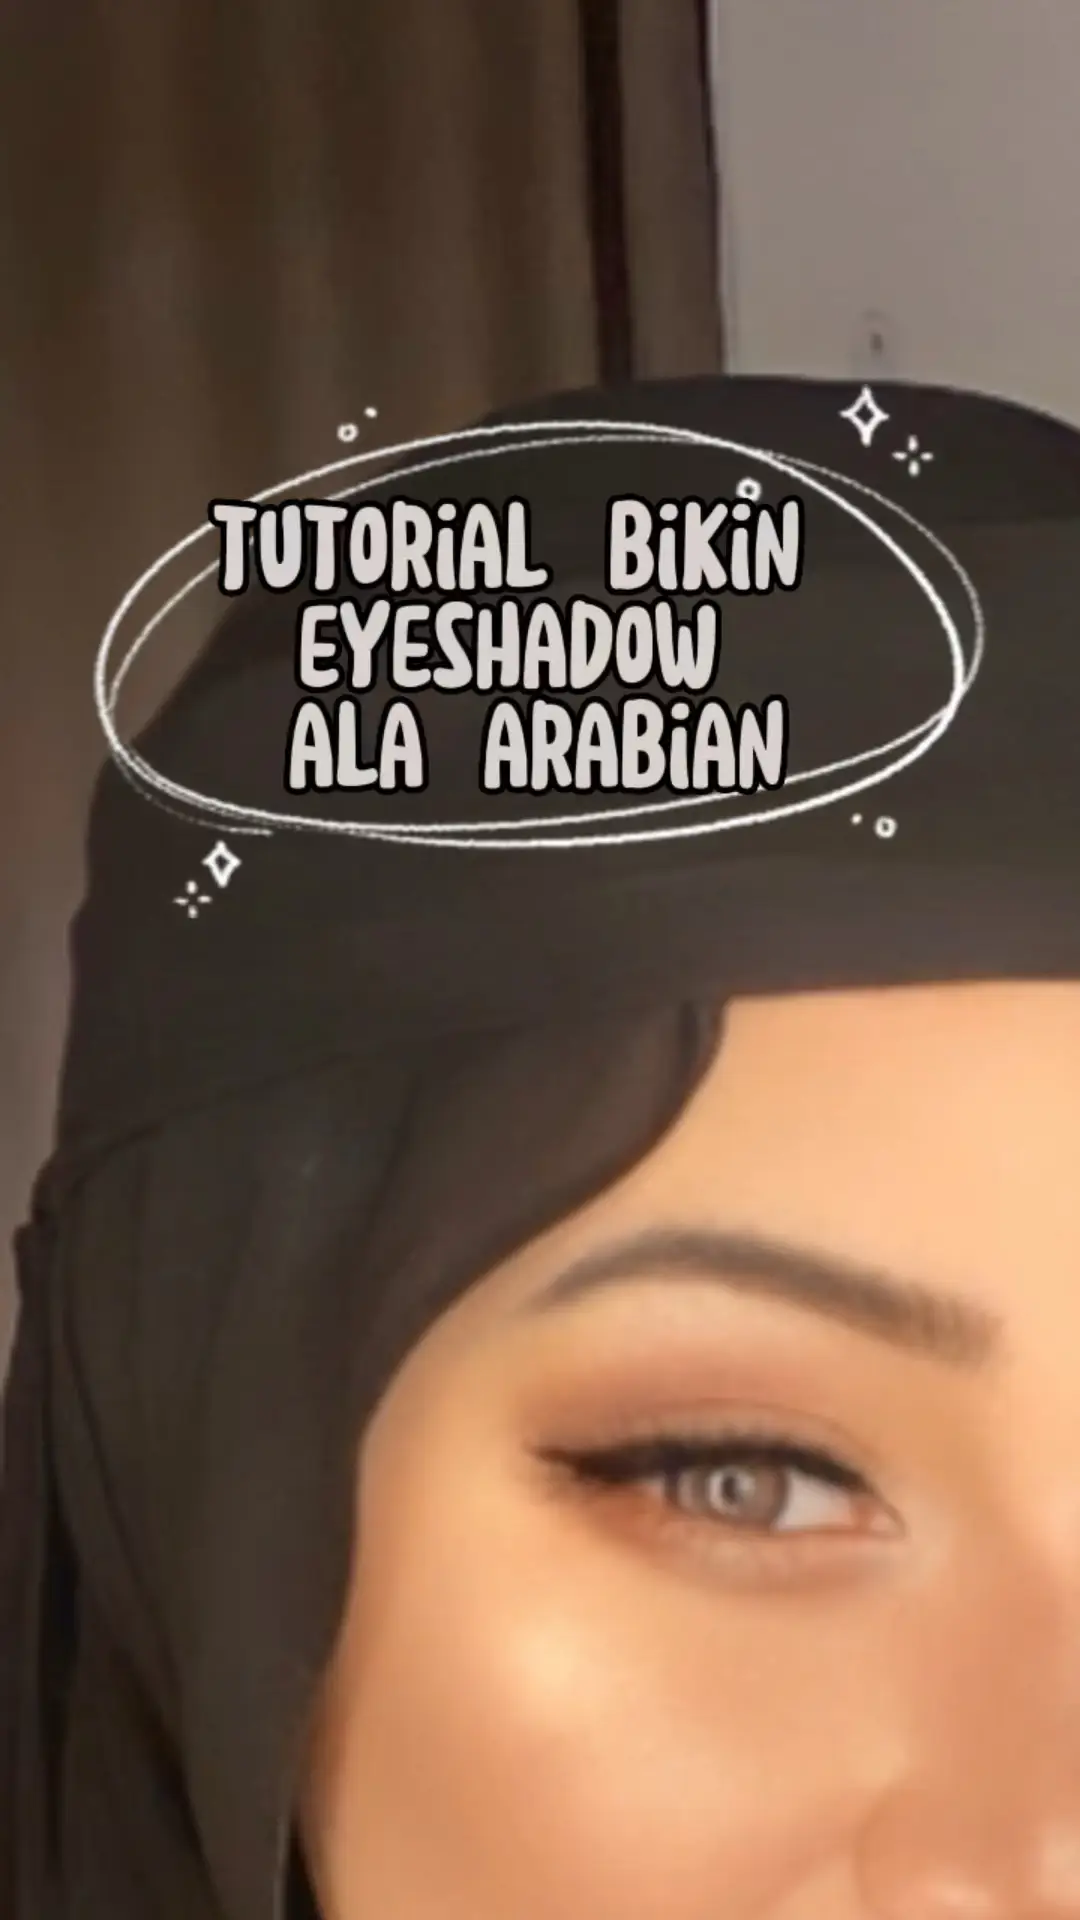 Tutorial Bikin Eyeshadow Ala Arabian